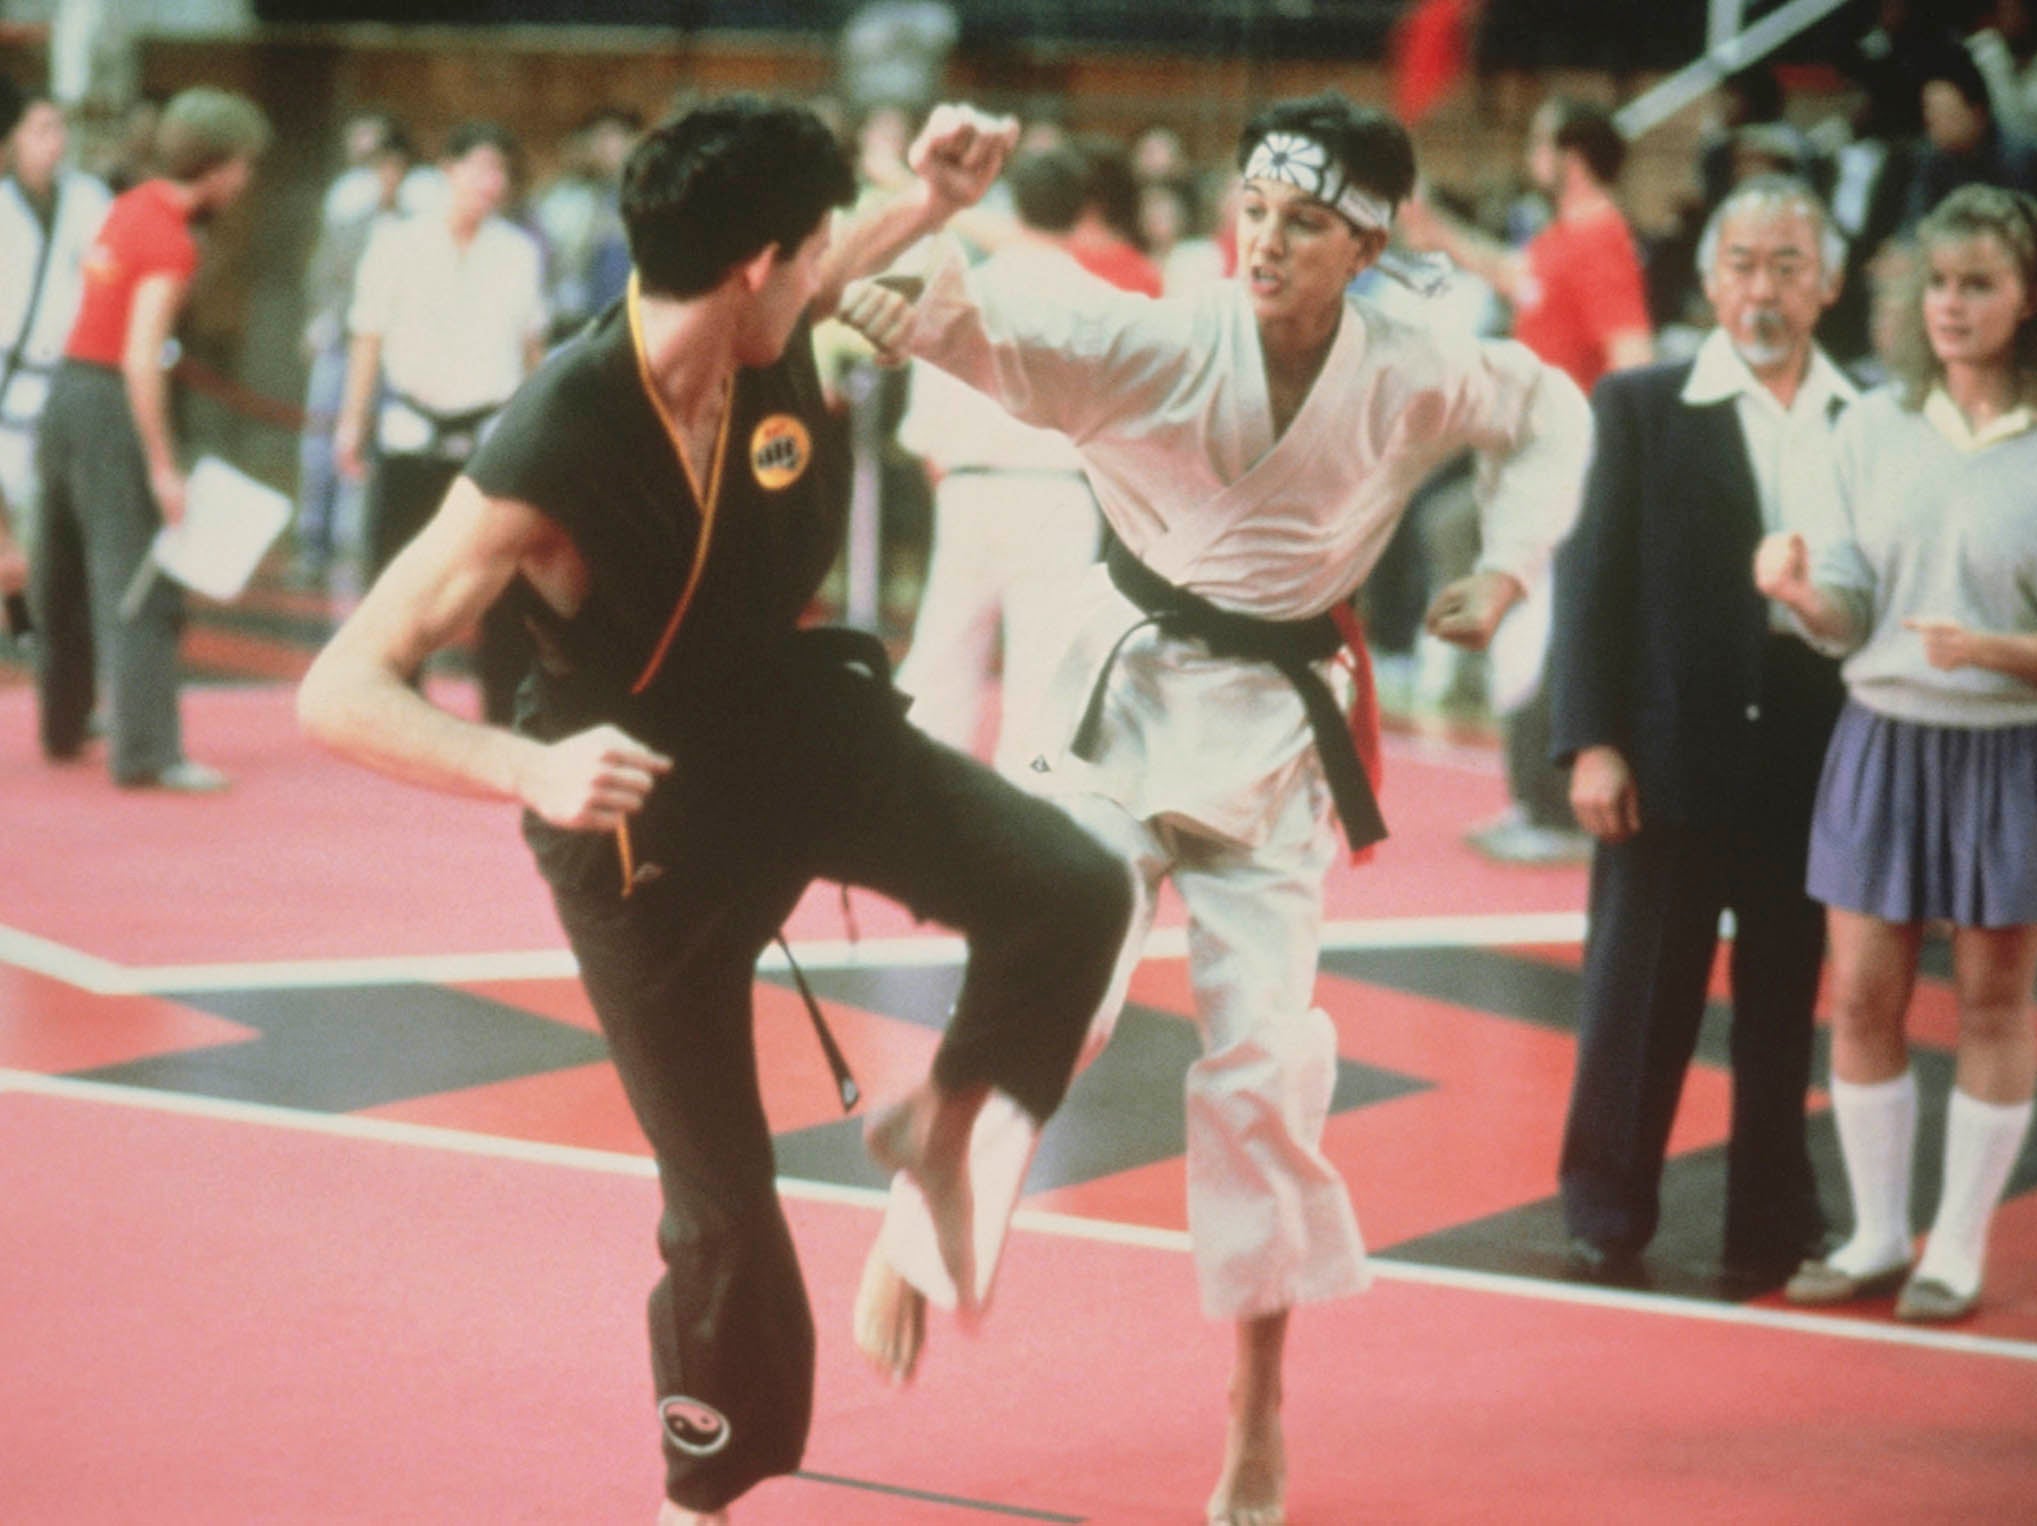 Karate Kid (1984) fue uno de los filmes definitorios del cine popular de los ochenta